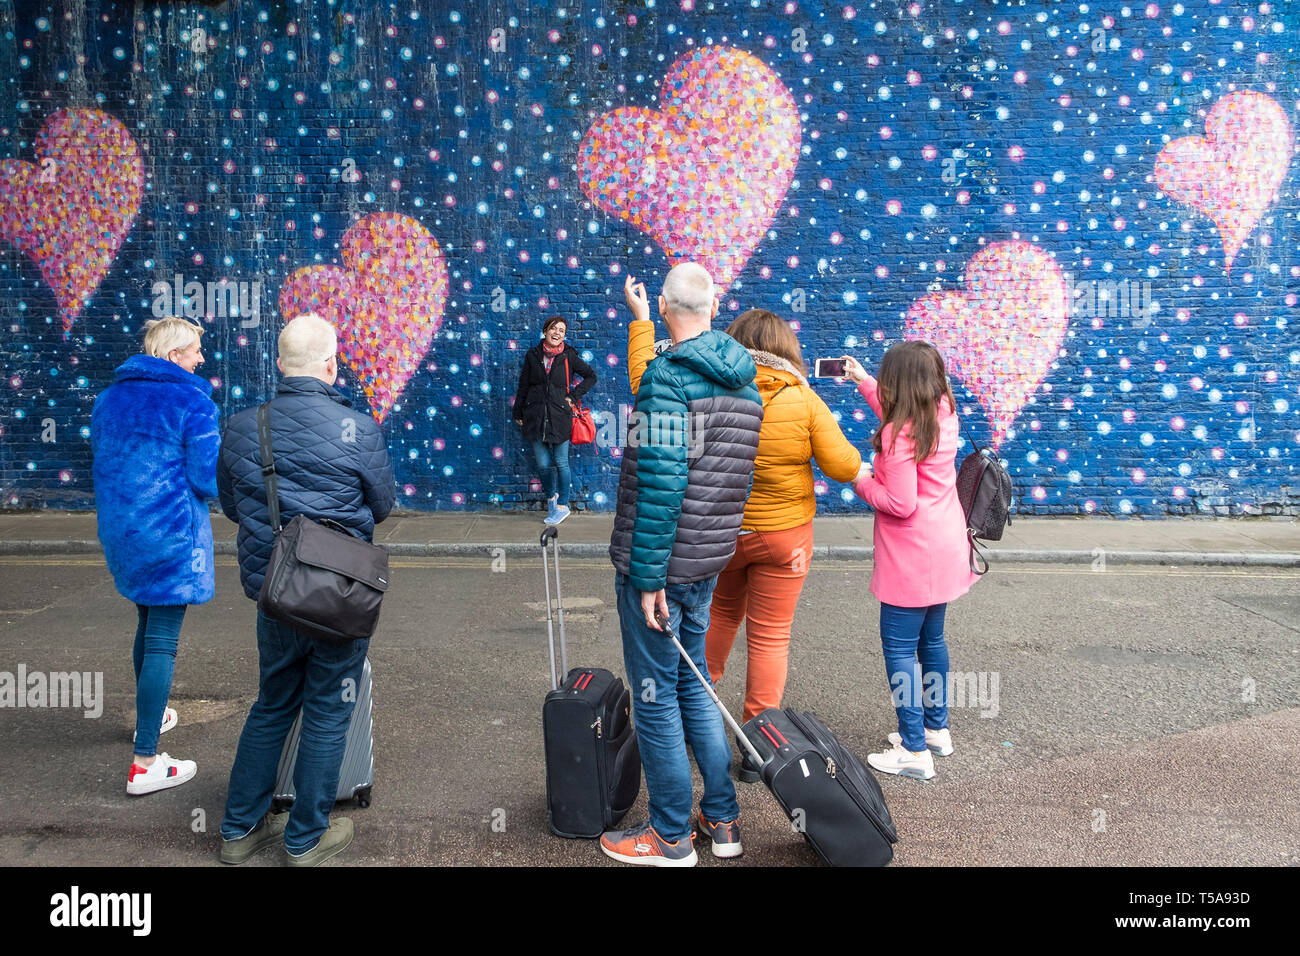 Les gens qui regardent une femme photographiant son ami posant contre une peinture murale colorée à Londres. Banque D'Images